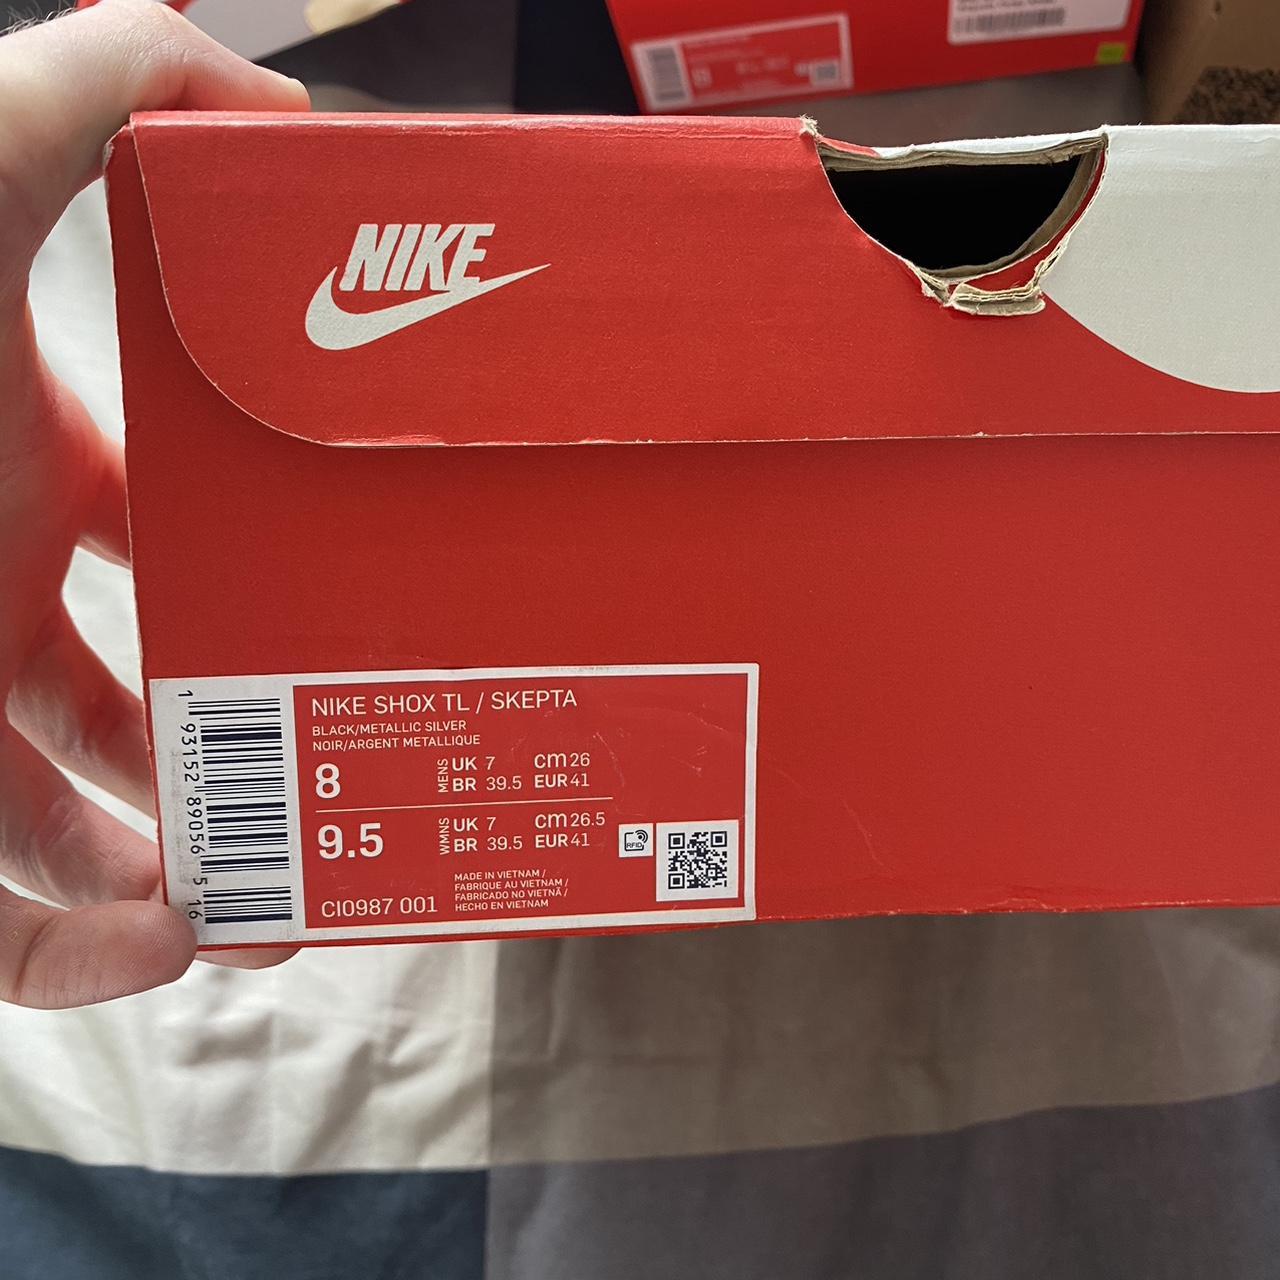 Nike Shox TL / Skepta Size UK 7 comes with og box... - Depop